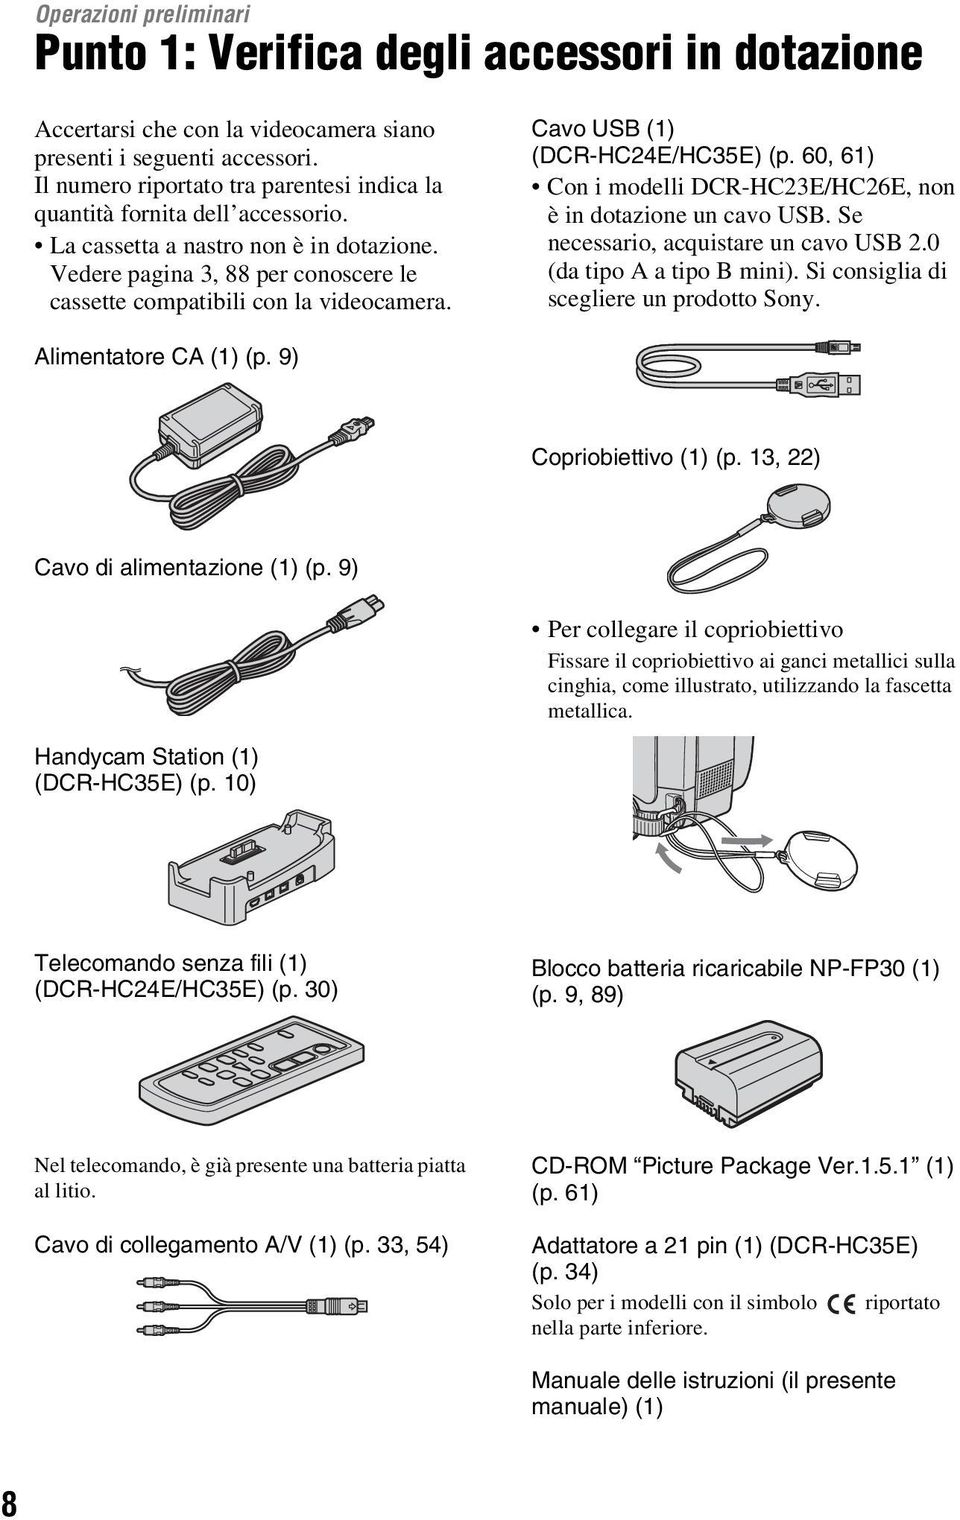 Cavo USB (1) (DCR-HC24E/HC35E) (p. 60, 61) Con i modelli DCR-HC23E/HC26E, non è in dotazione un cavo USB. Se necessario, acquistare un cavo USB 2.0 (da tipo A a tipo B mini).